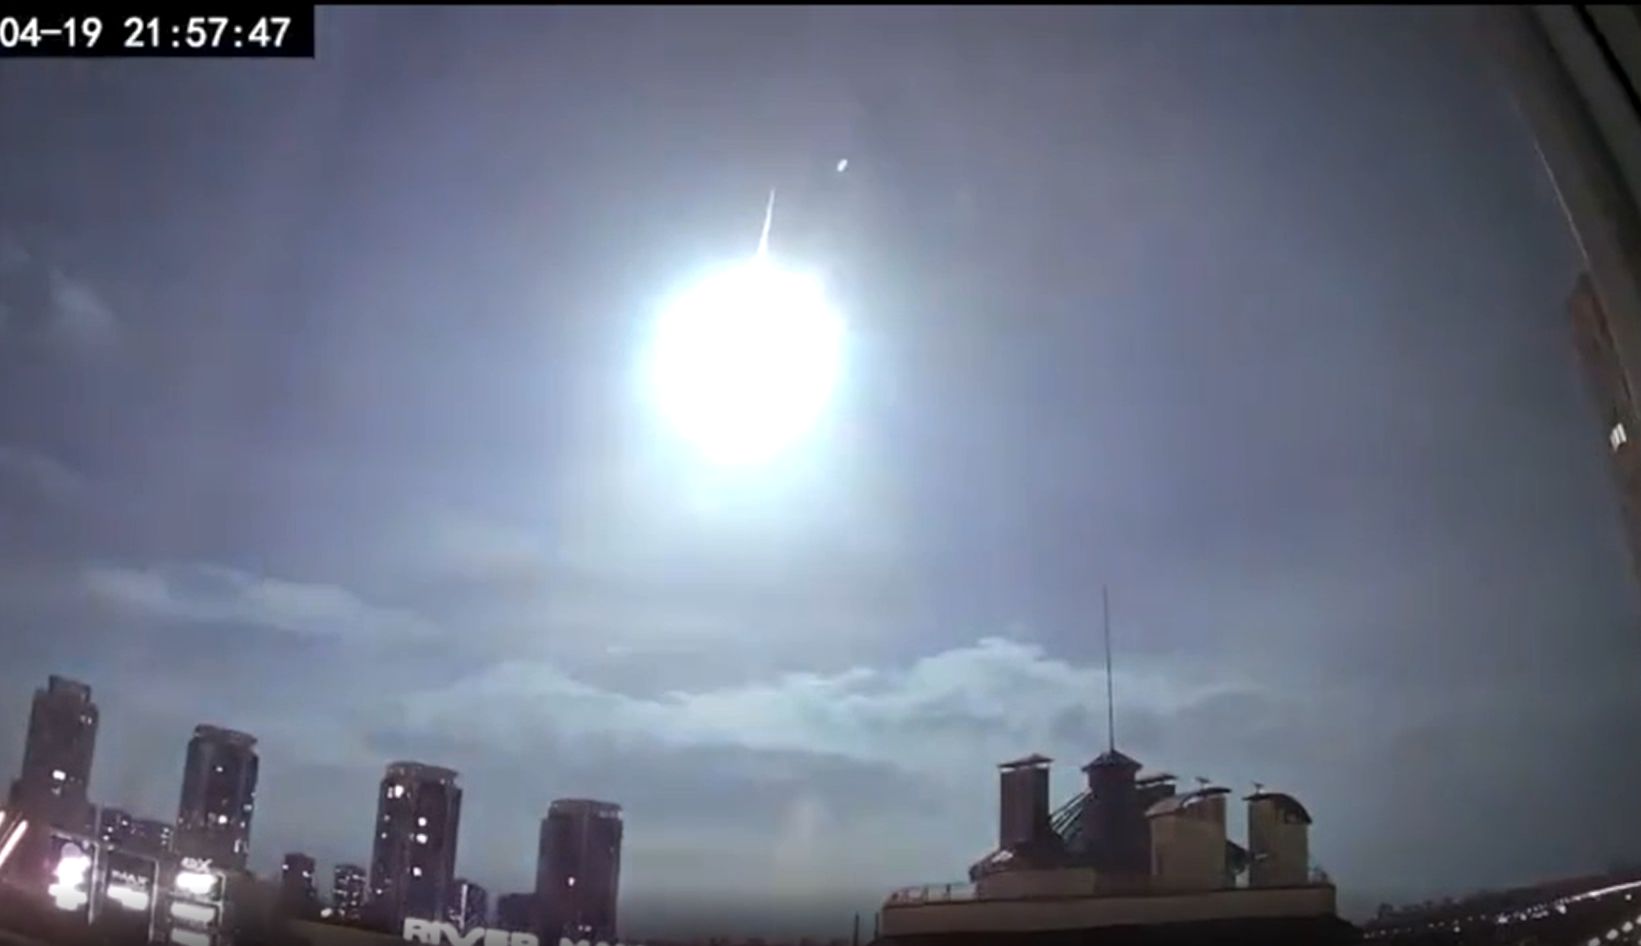 Meteor okozhatta a rejtélyes villanást szerda este Kijevben